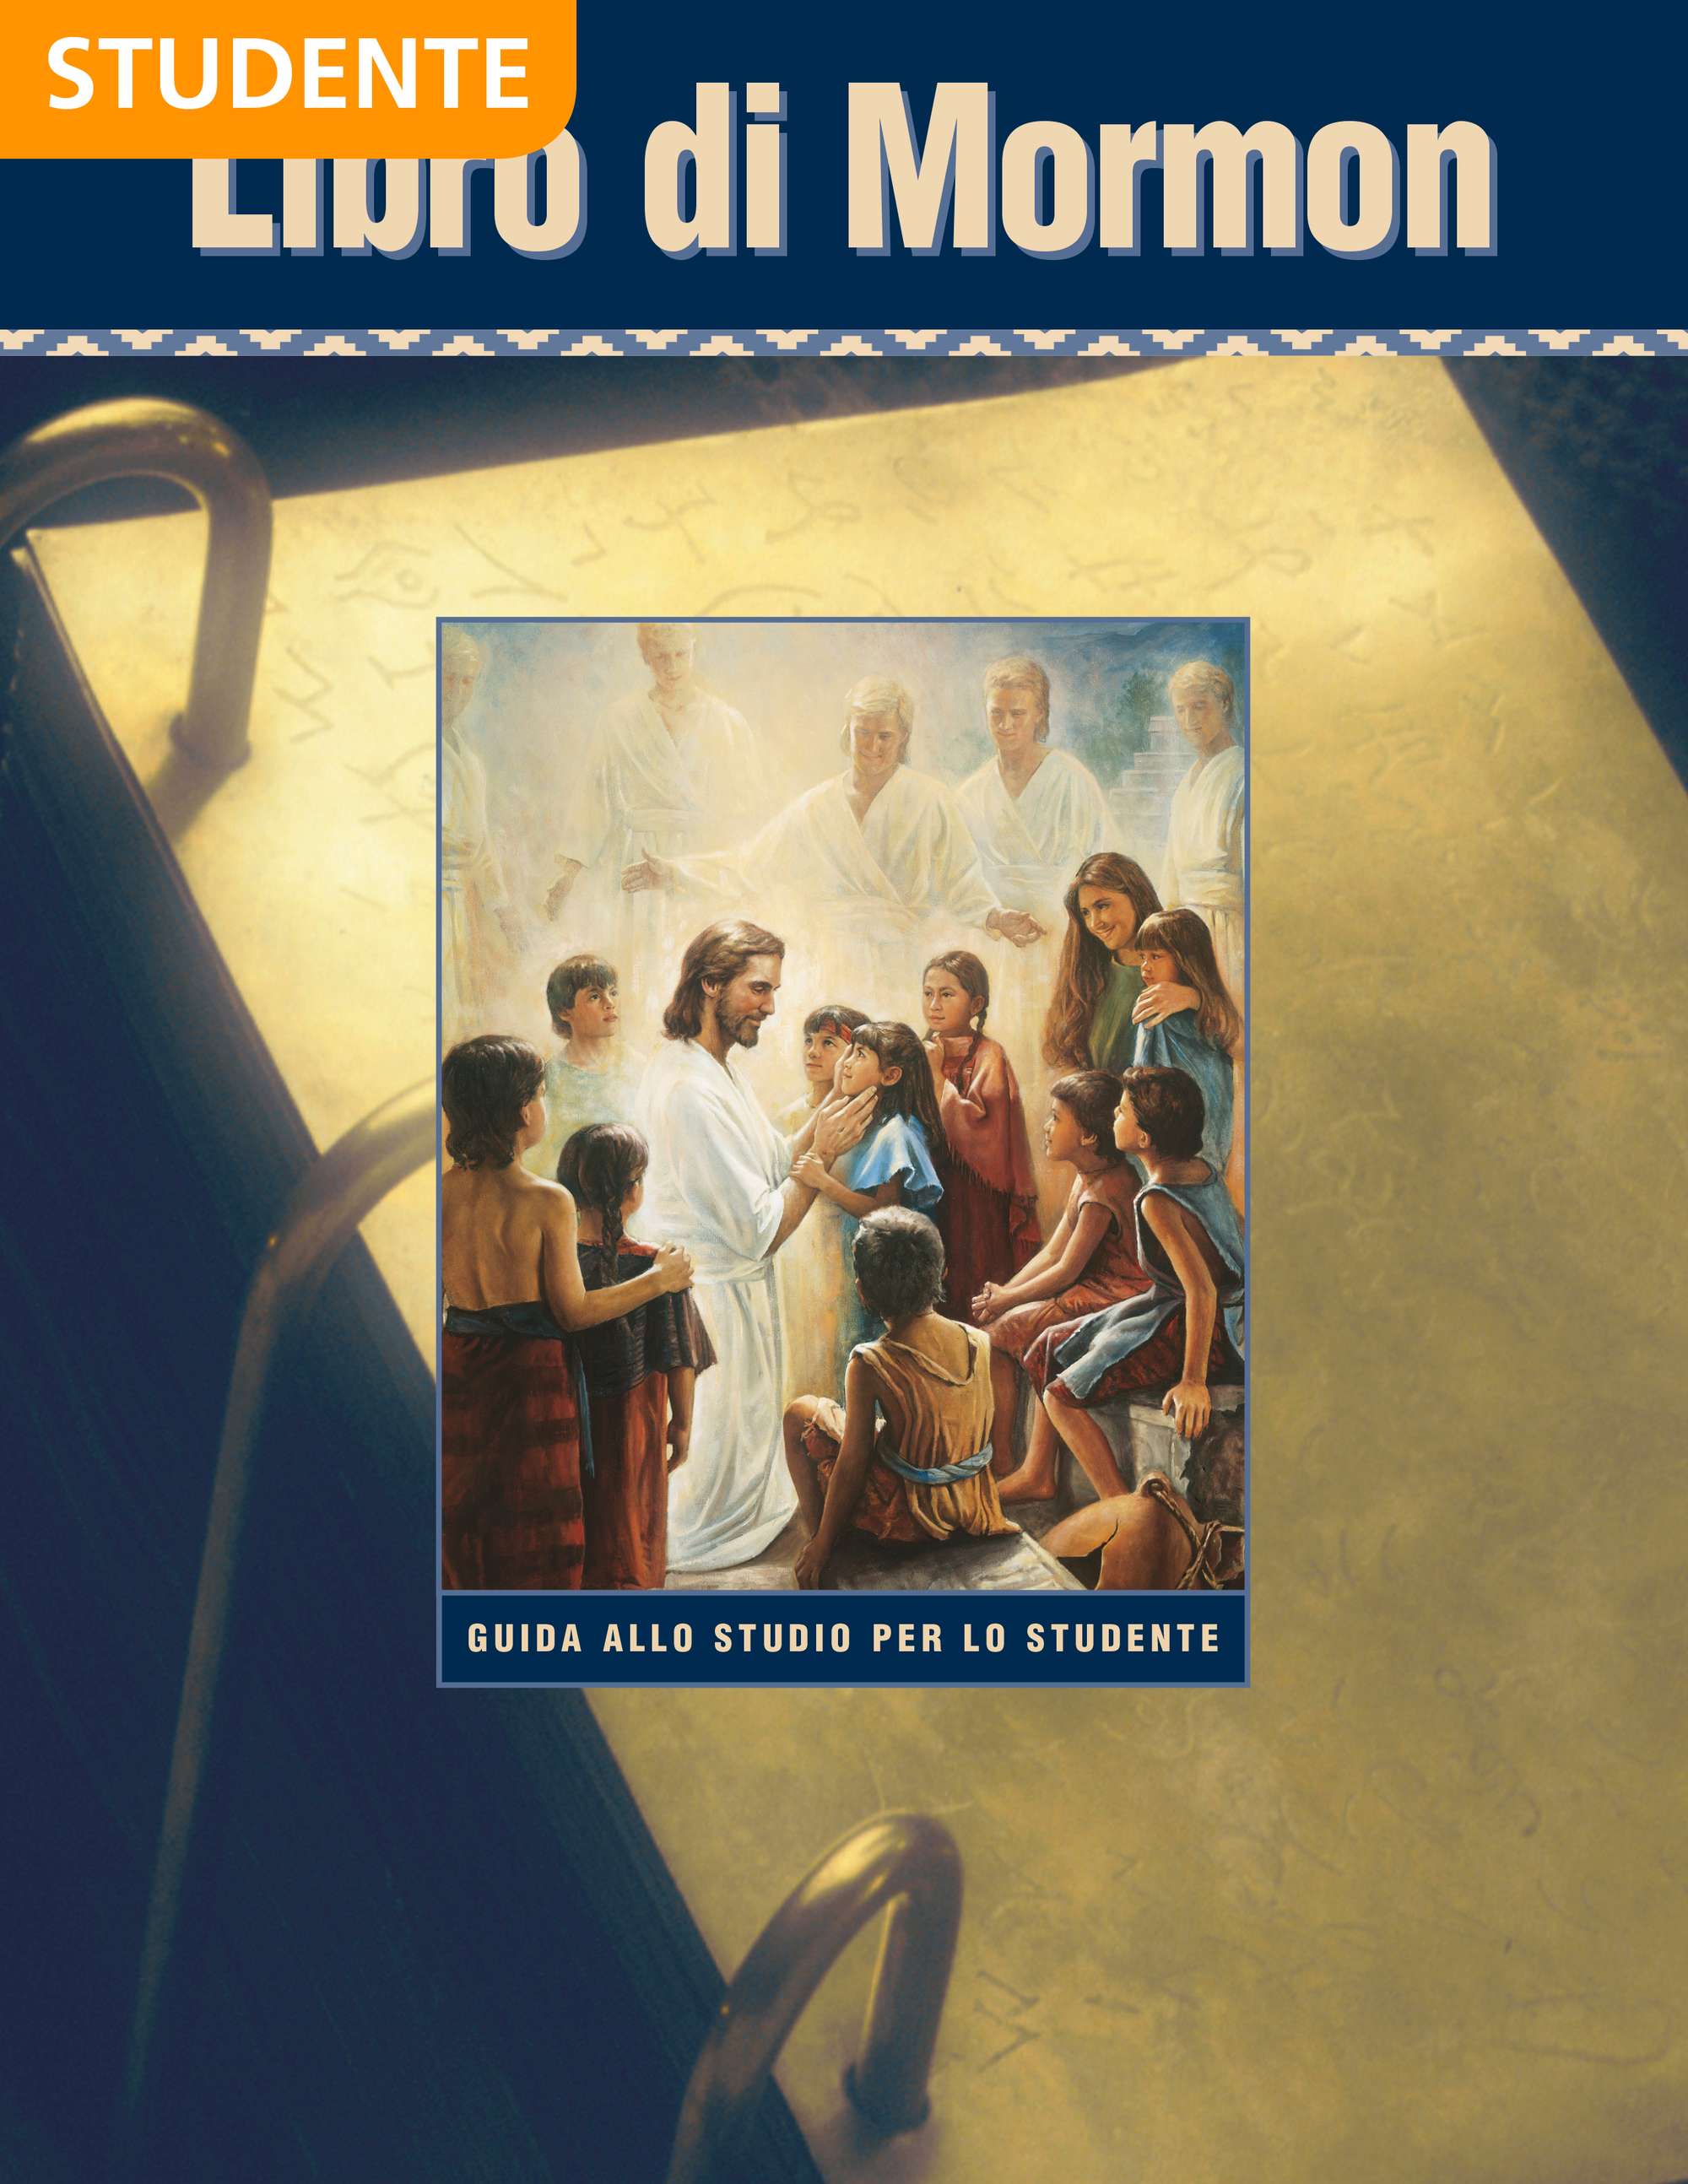 Libro di Mormon – Guida allo studio per lo studente di Seminario